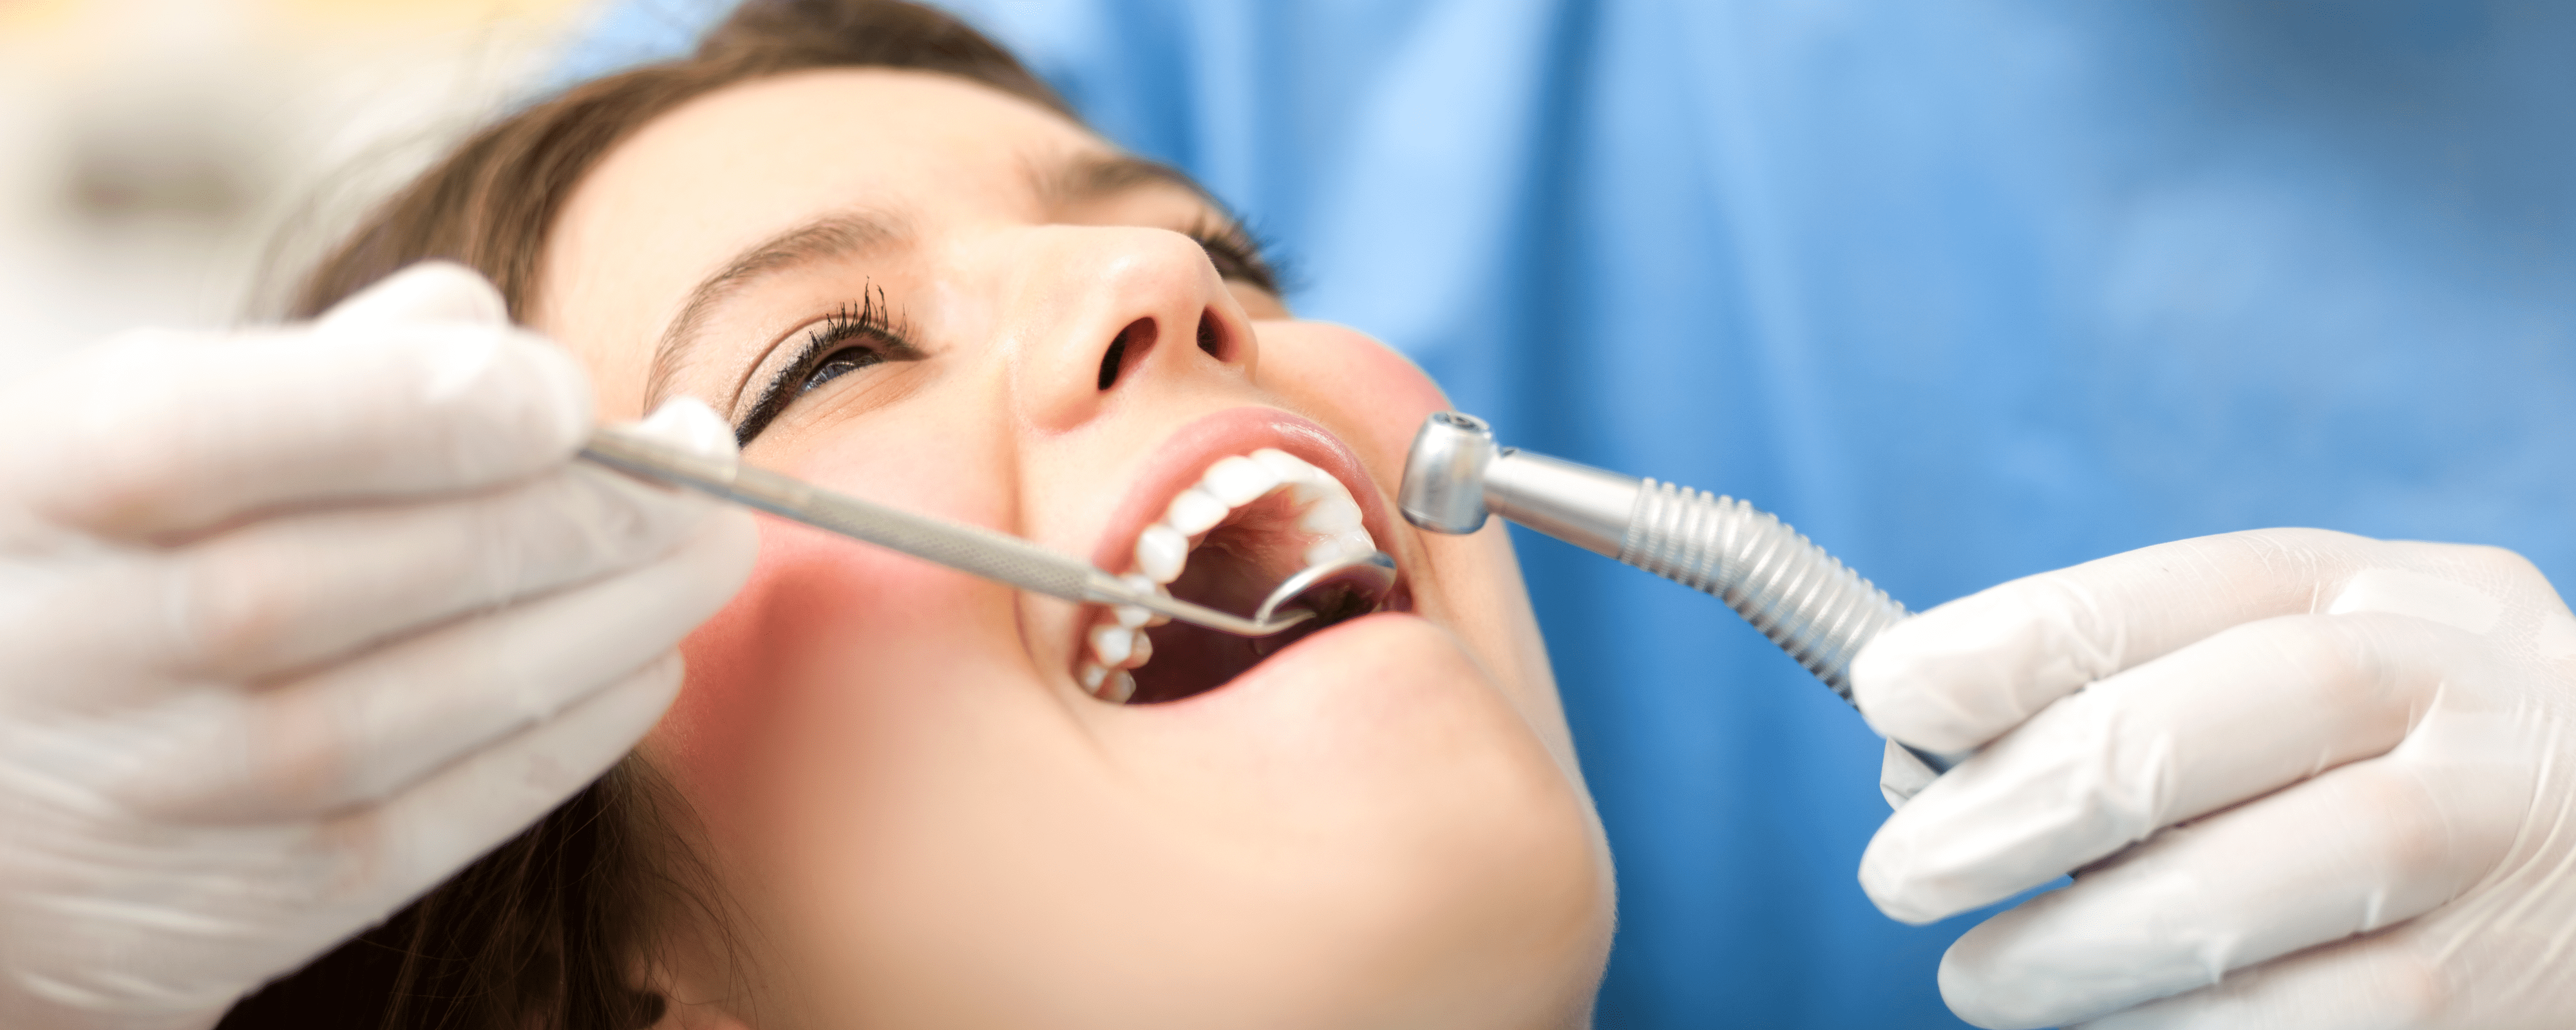 دکتر ادیب: عوارض و معایب ایمپلنت دندان کدامند؟